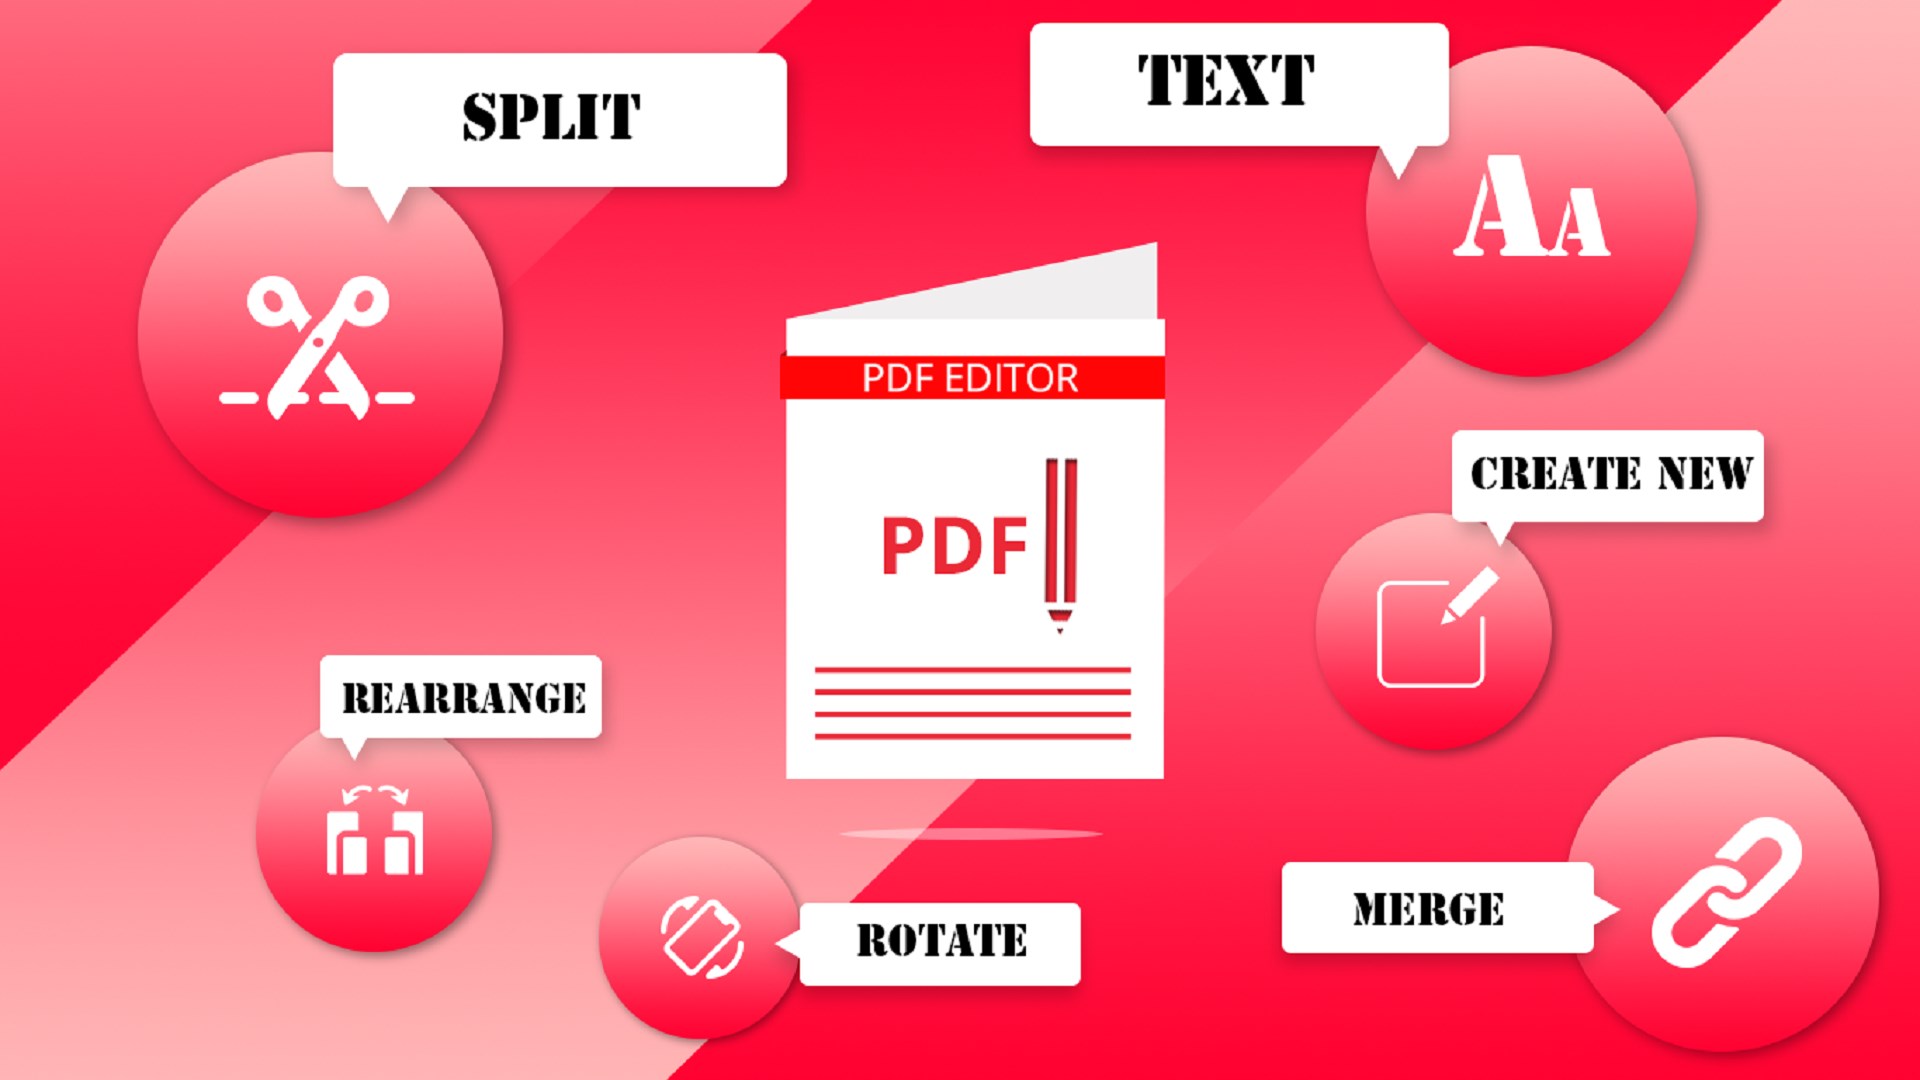 Pengertian, Fungsi, Kegunaan Dan Cara Kompres File PDF ...